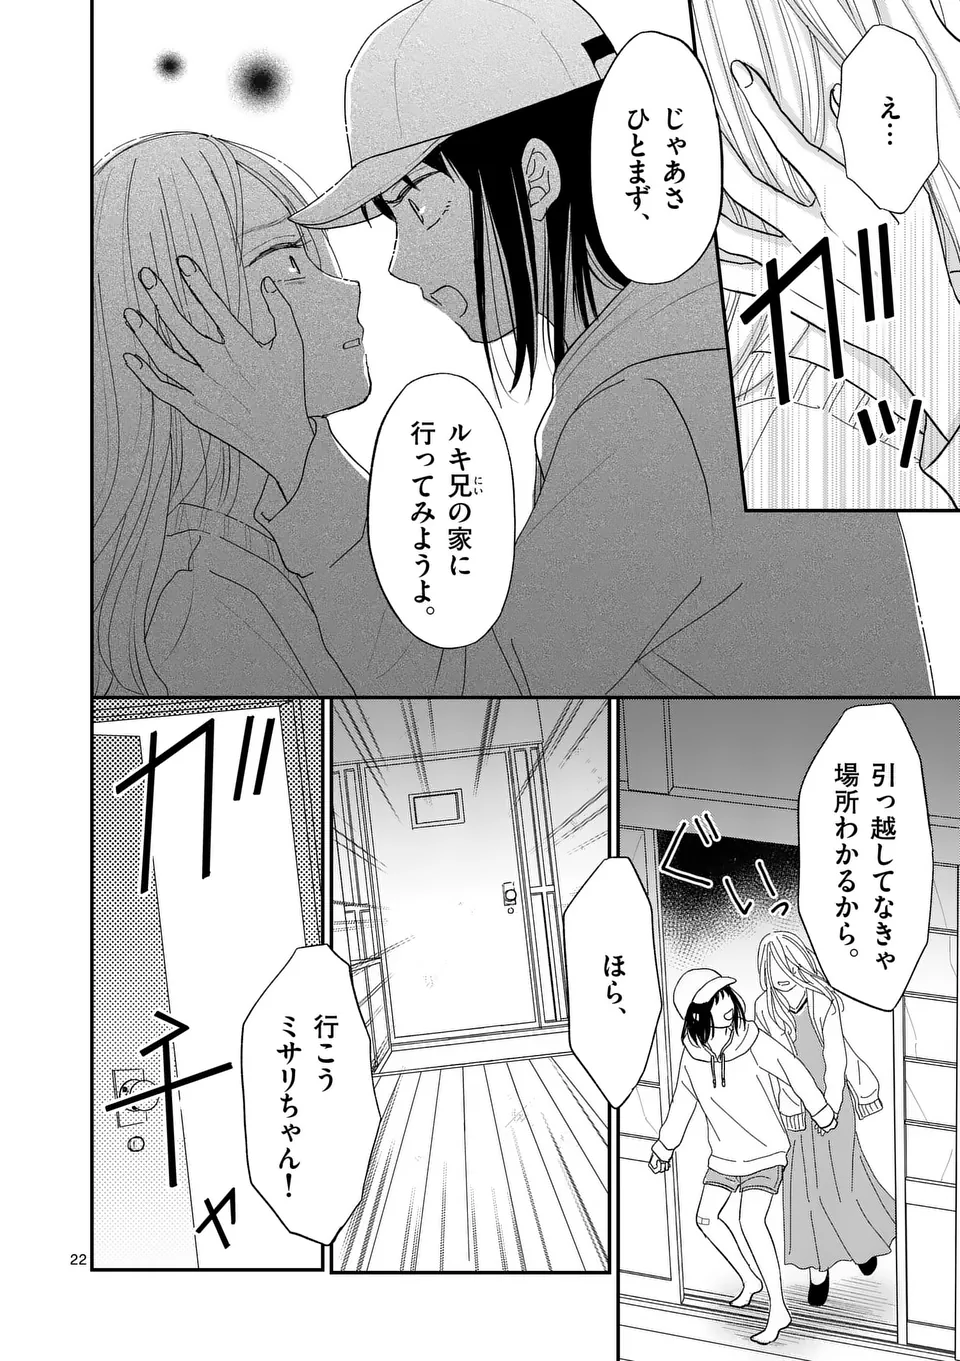 Atashi wo Ijimeta Kanojo no Ko - Chapter 2 - Page 22